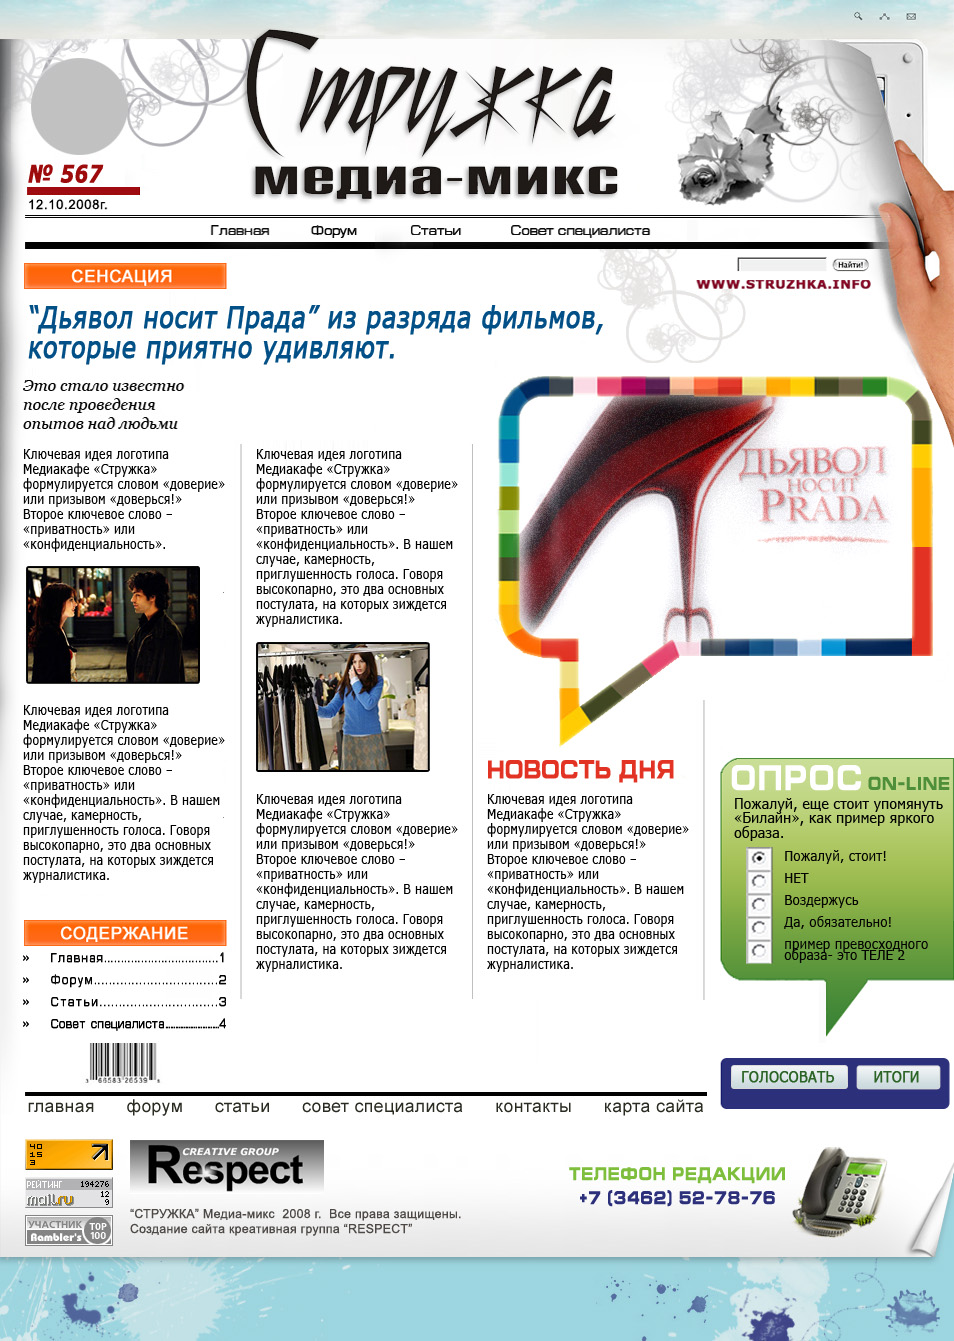 On-line газета